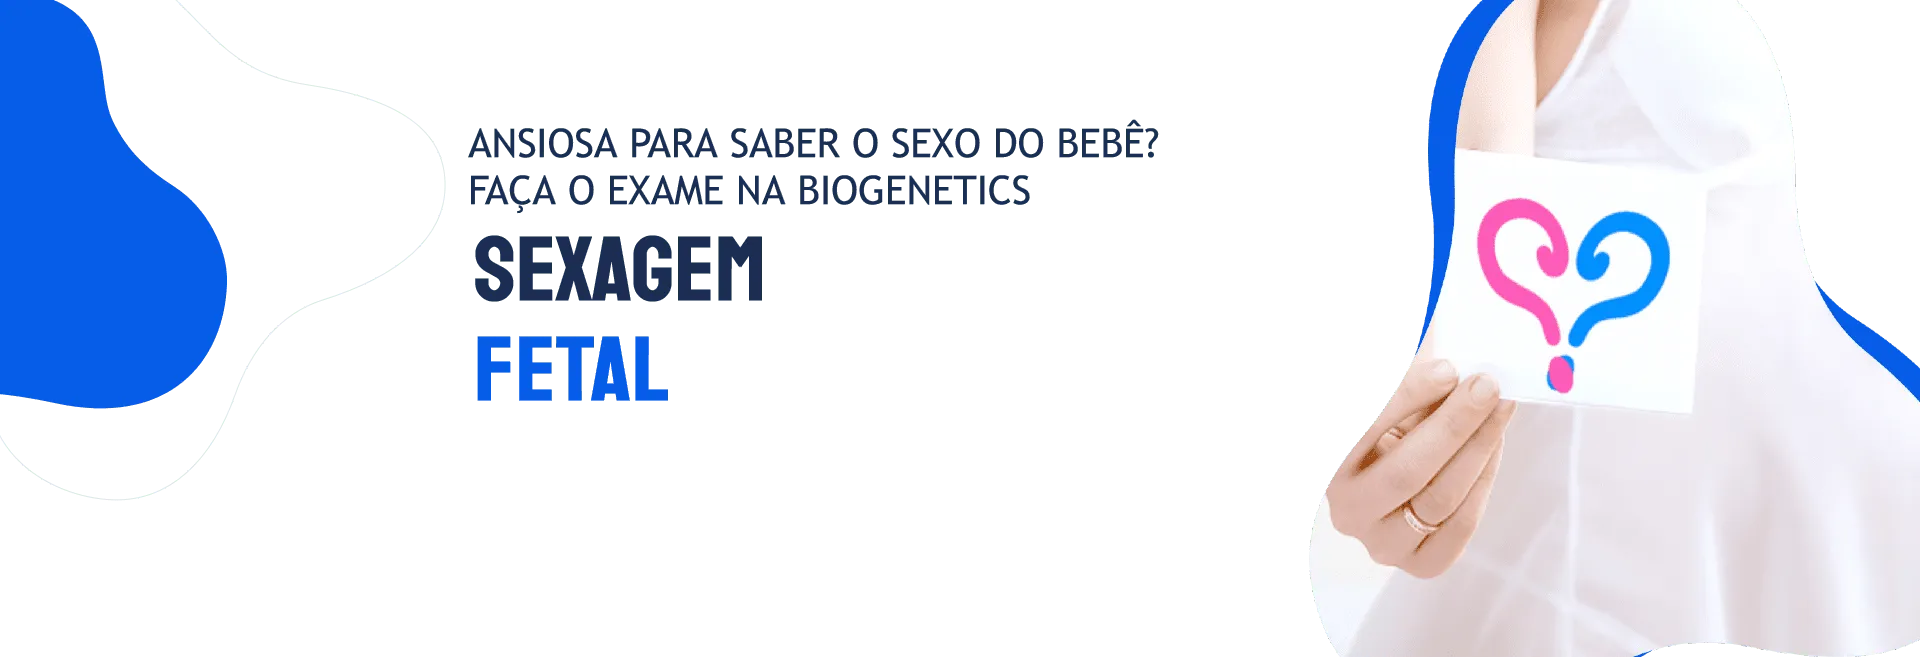 exame-sexagem-fetal-biogenetics-banner